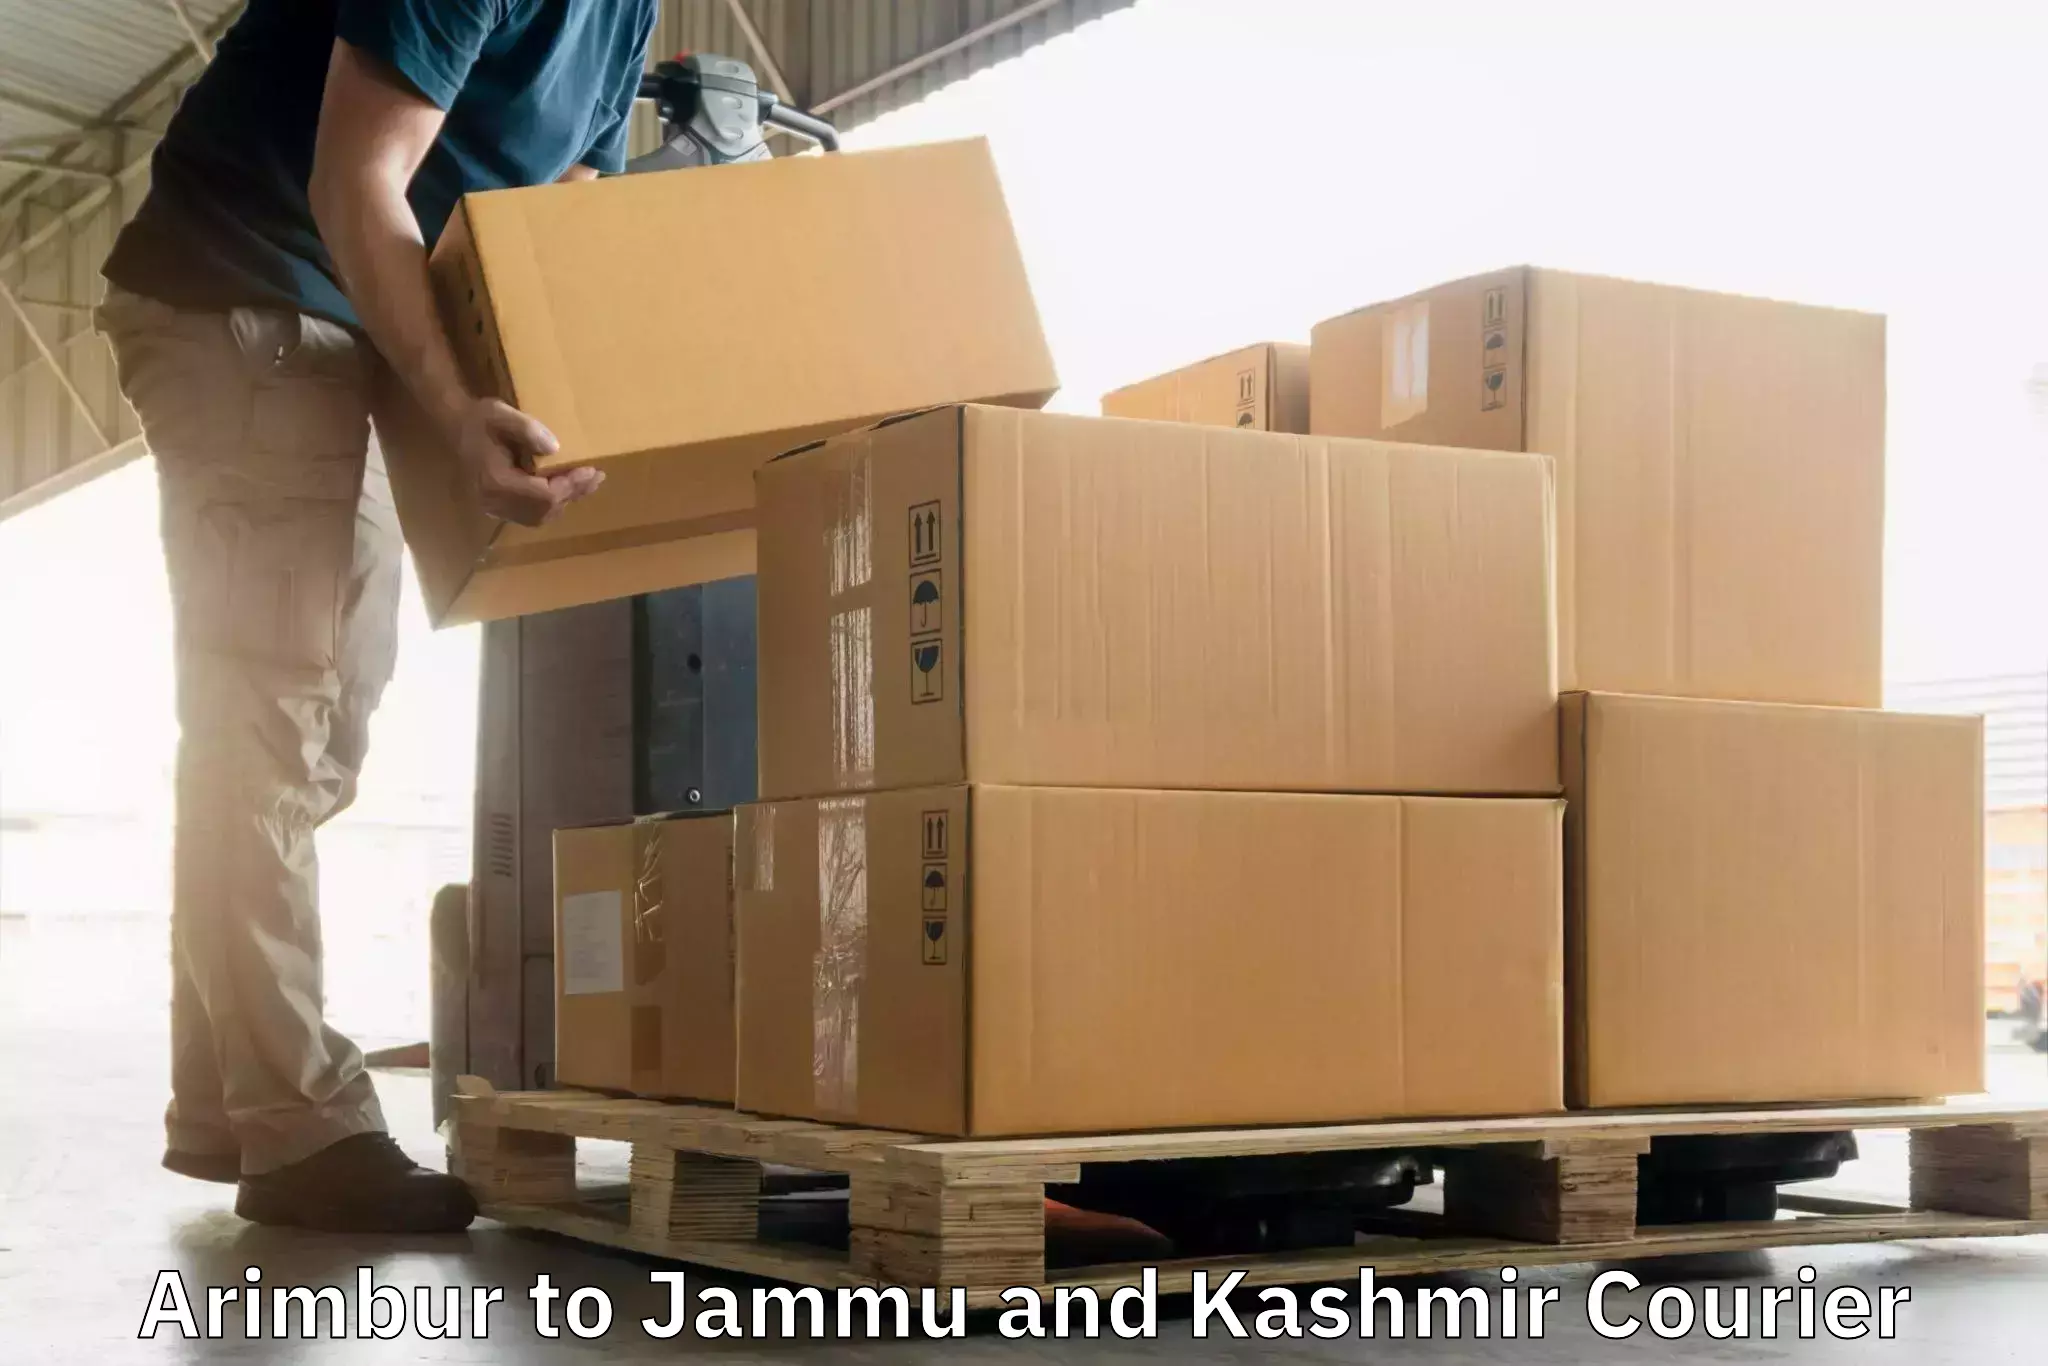 Customer-focused courier Arimbur to Ranbir Singh Pura